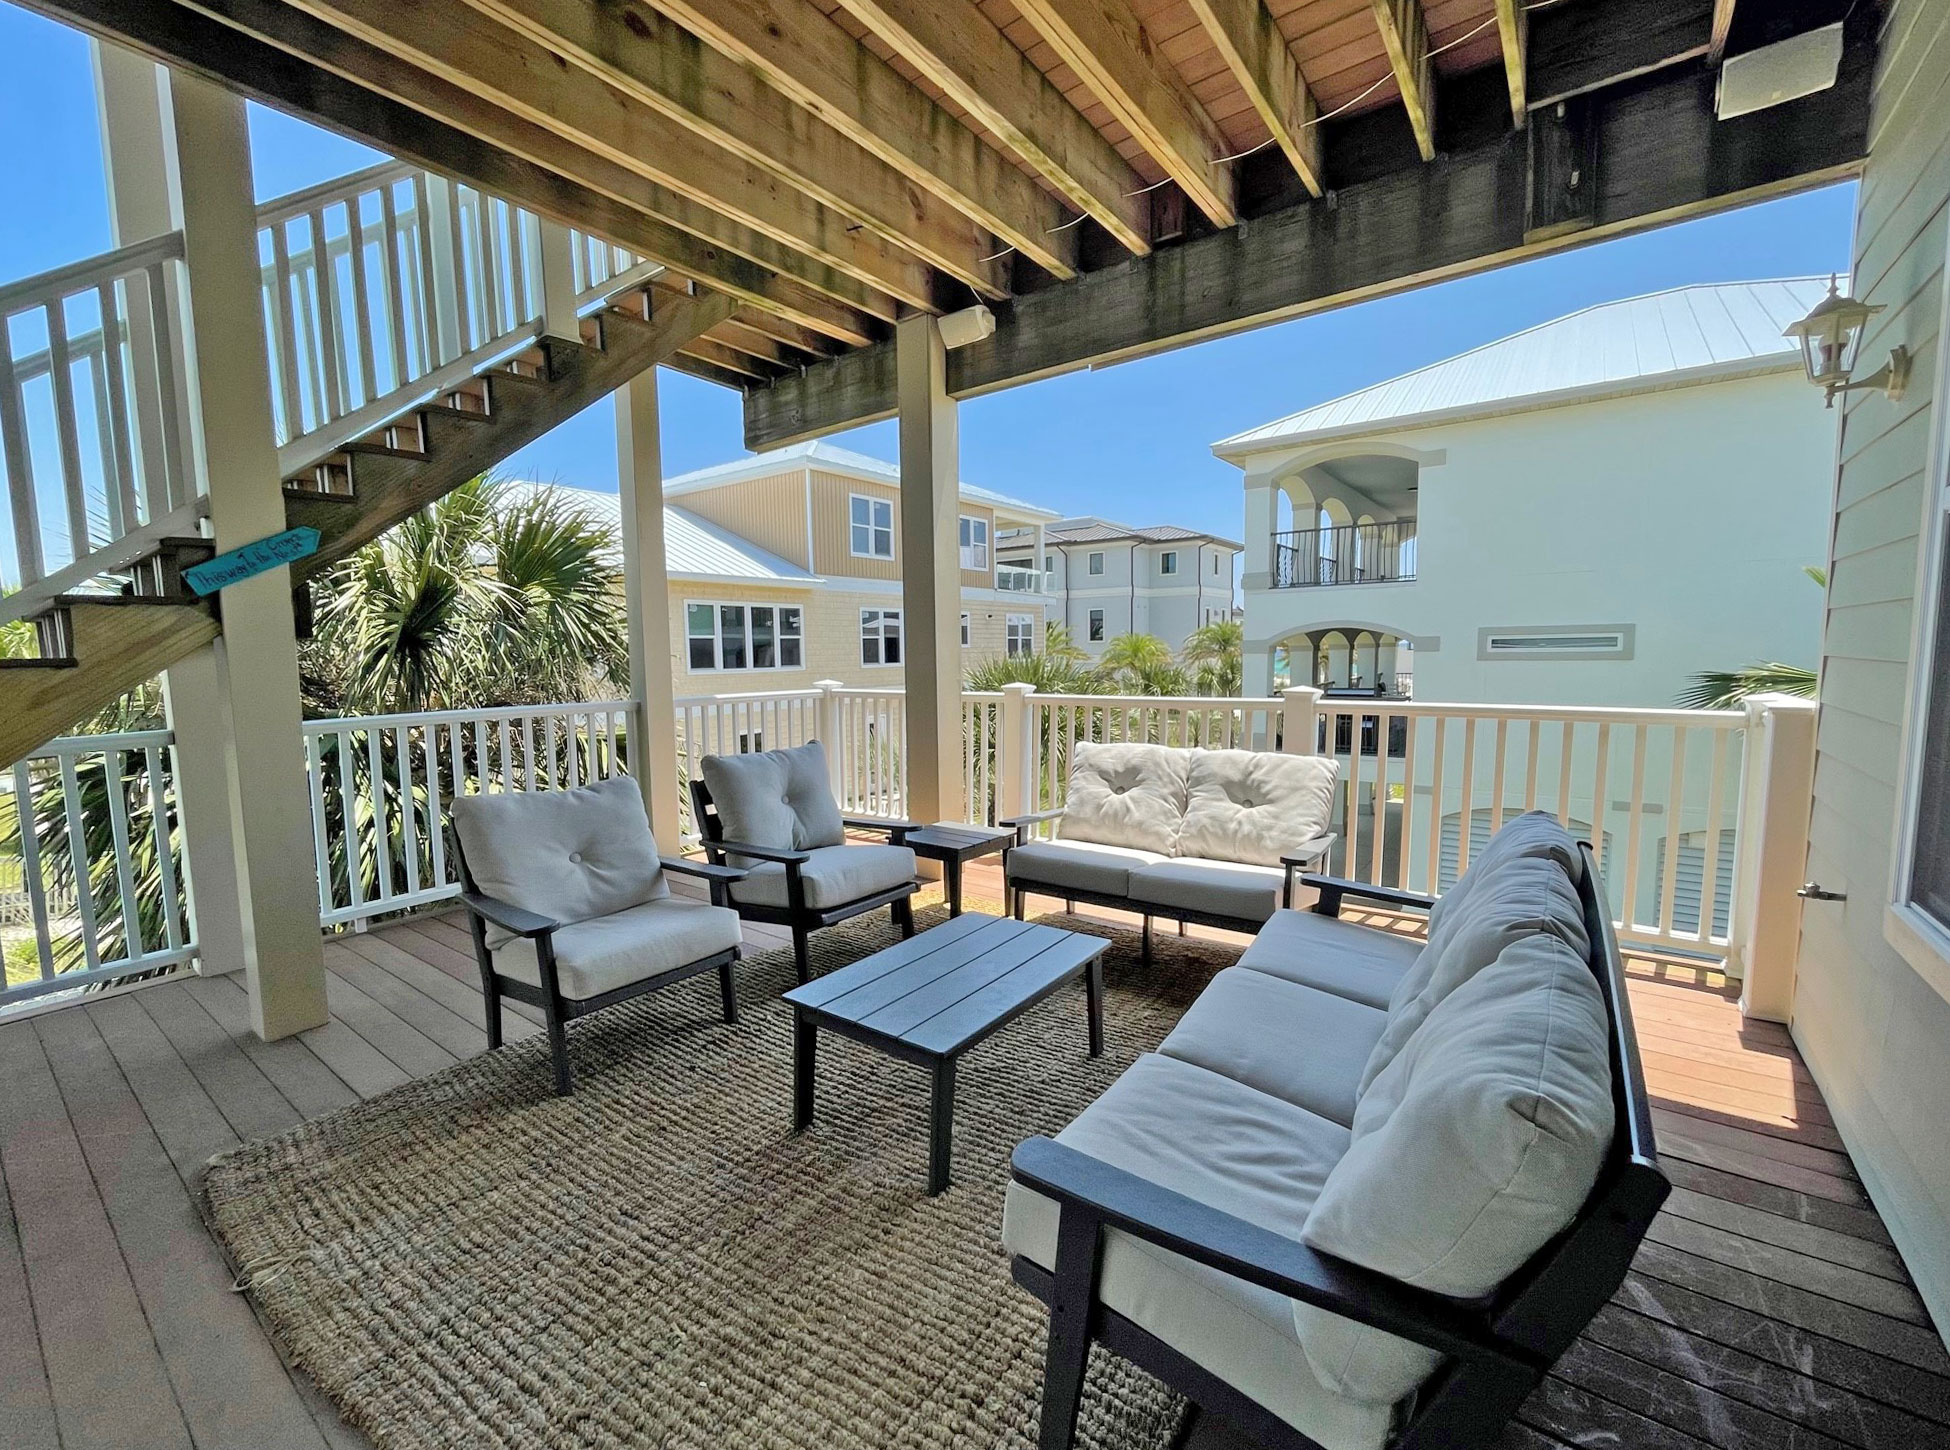 Calle Juela 5 - Sandy Crab Horizon House / Cottage rental in Pensacola Beach House Rentals in Pensacola Beach Florida - #8